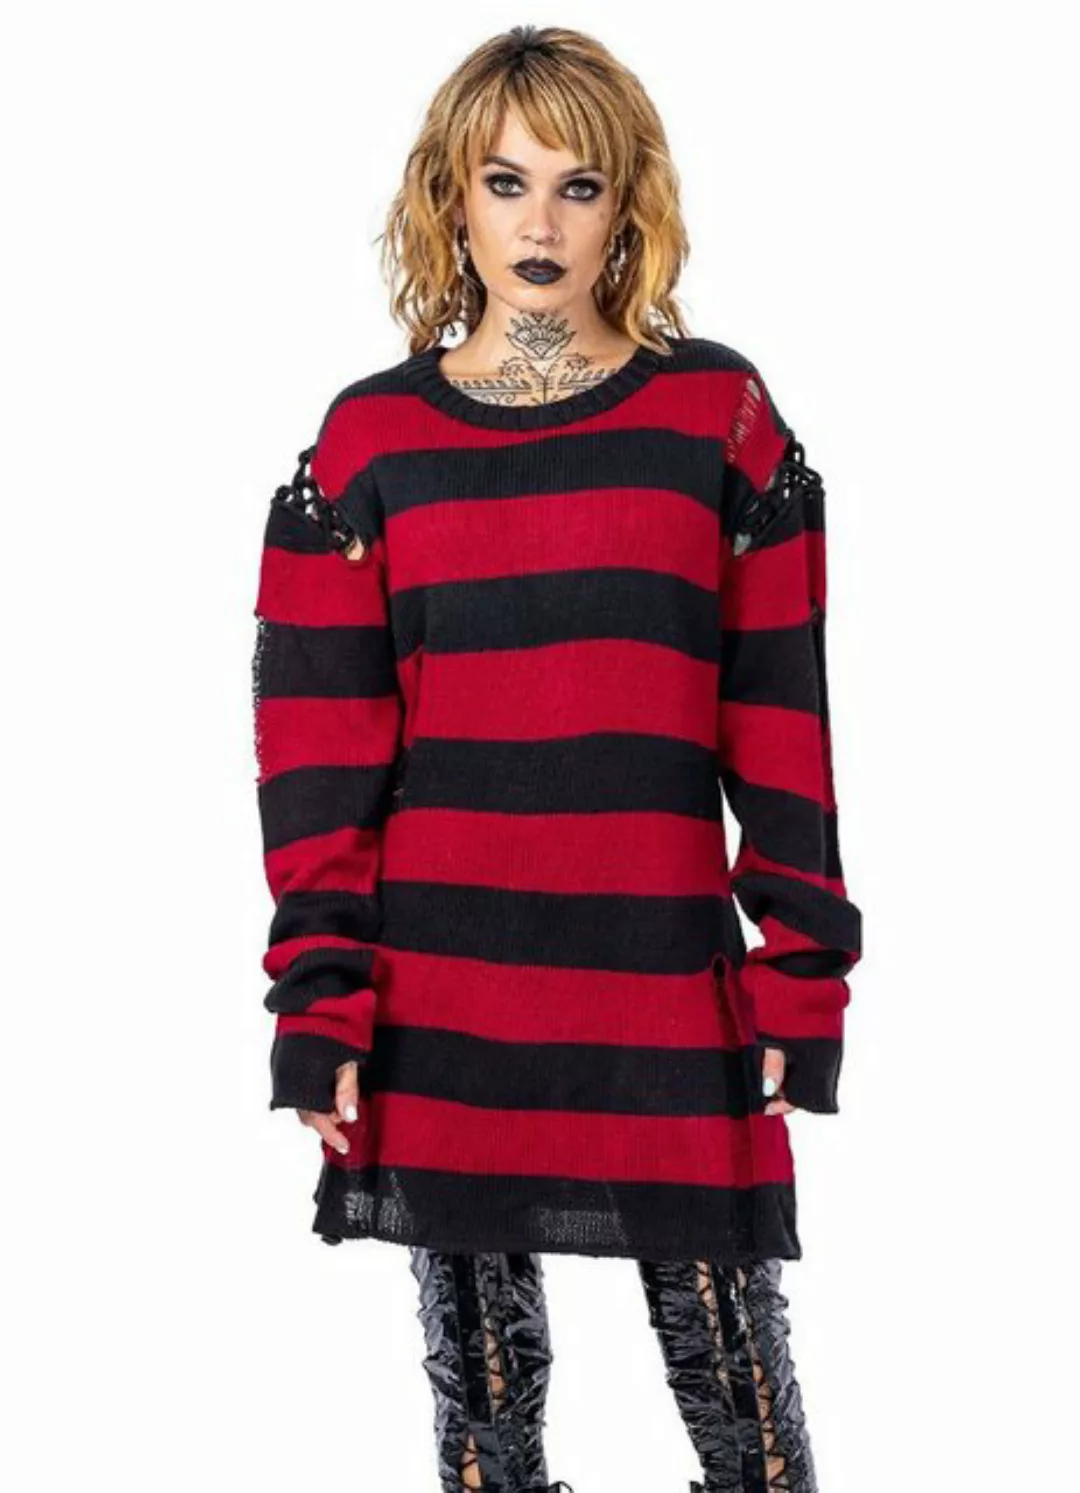 Heartless Sweatshirt Arcadia Strickpulli Gestreift Gothic Grunge Distressed günstig online kaufen